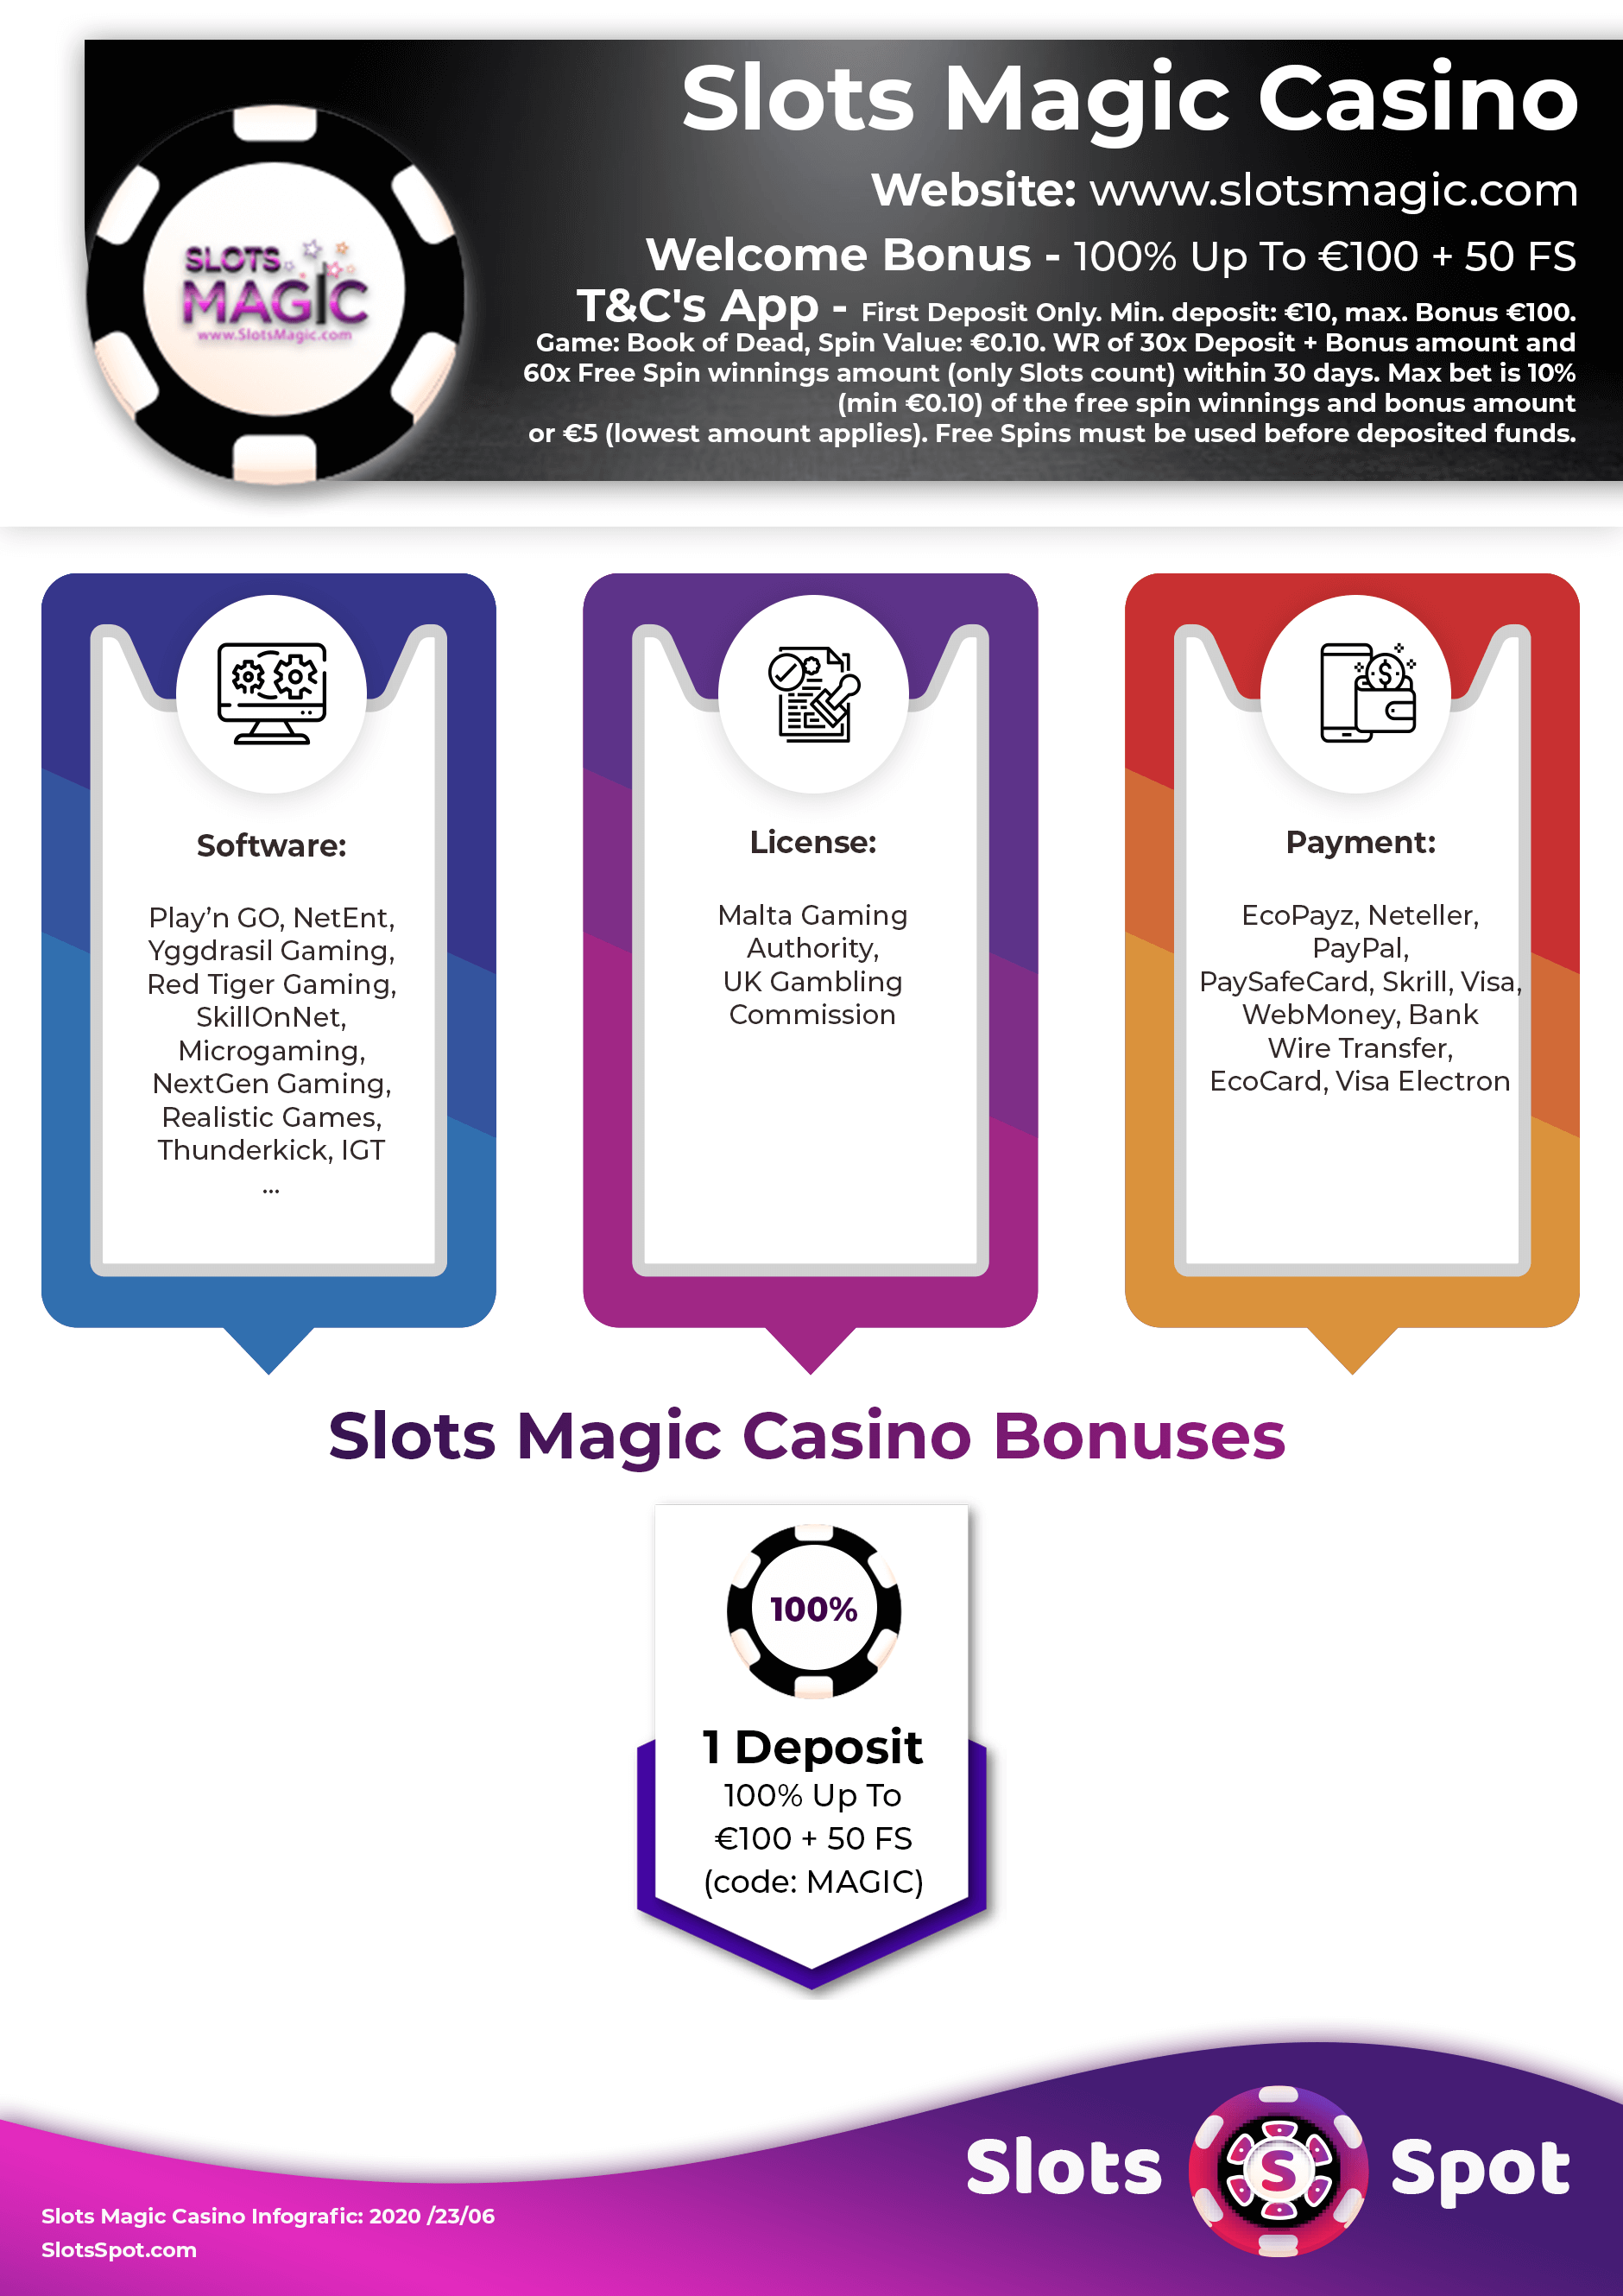 Slots Magic Casino No Deposit Bonus Codes ᗎ October 2020 [Deposit Bonuses]